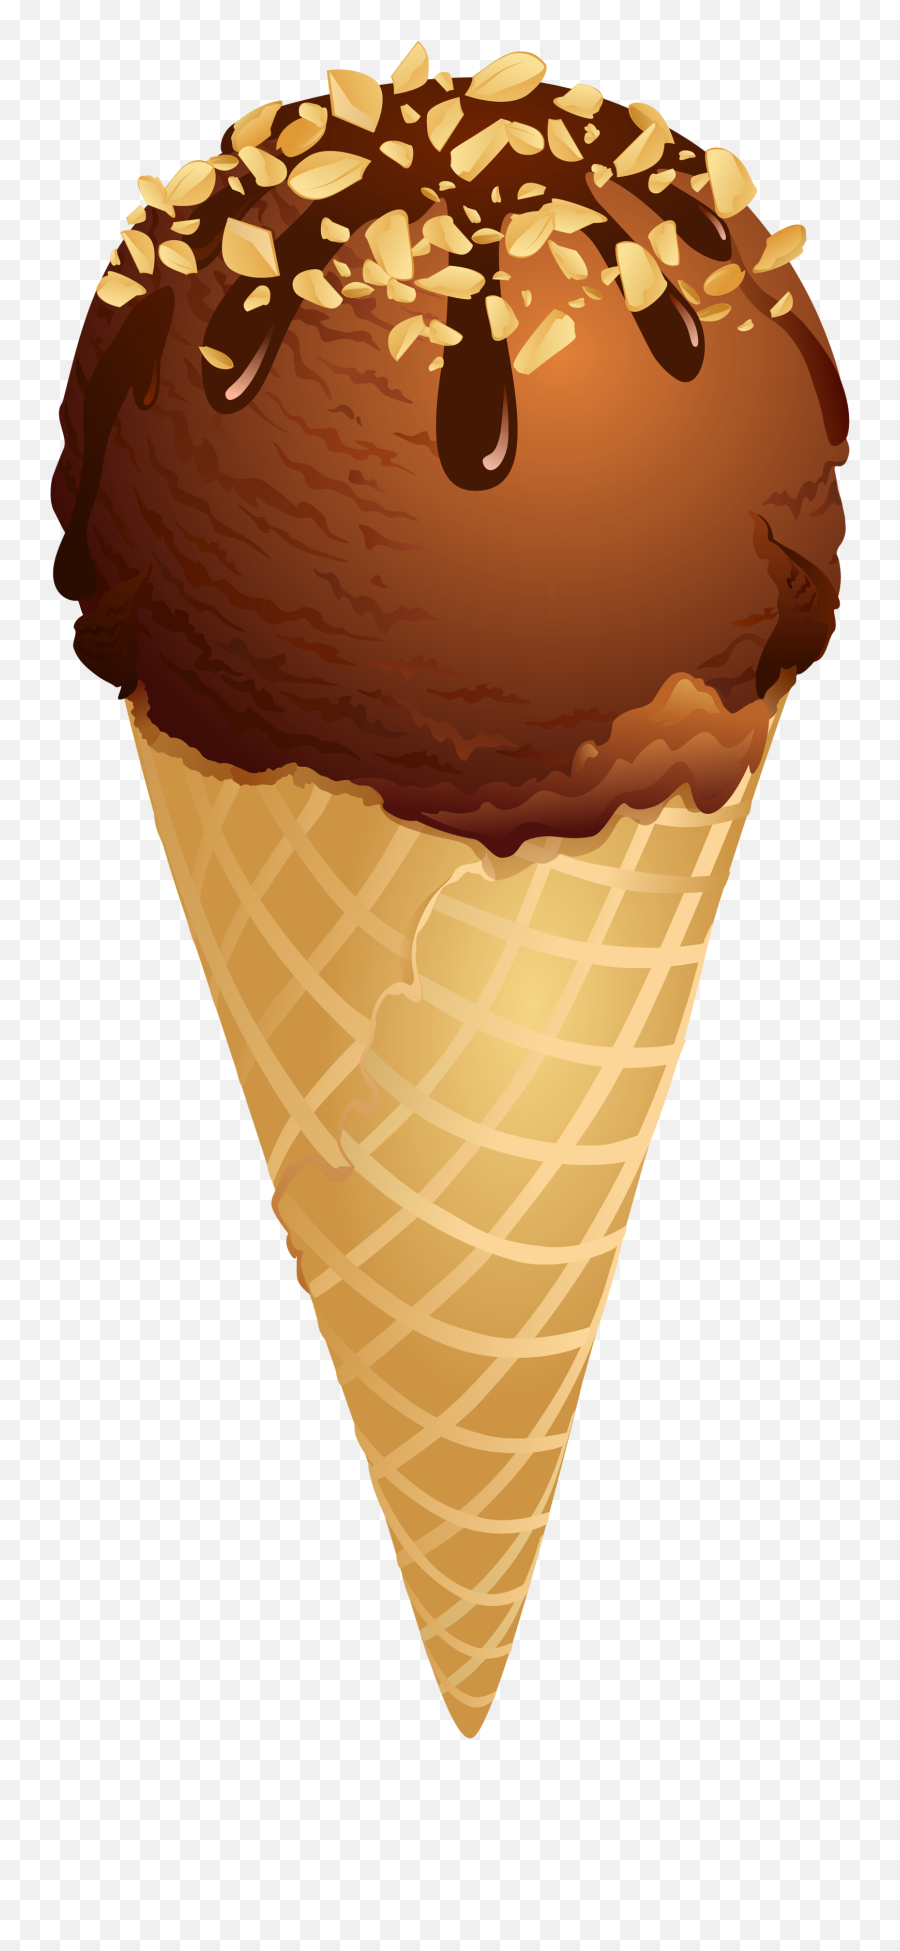 Ice Cream Free Ice Cream Clip Art - Ice Cream Cone With Toppings Clipart Emoji,Ice Cream Clipart